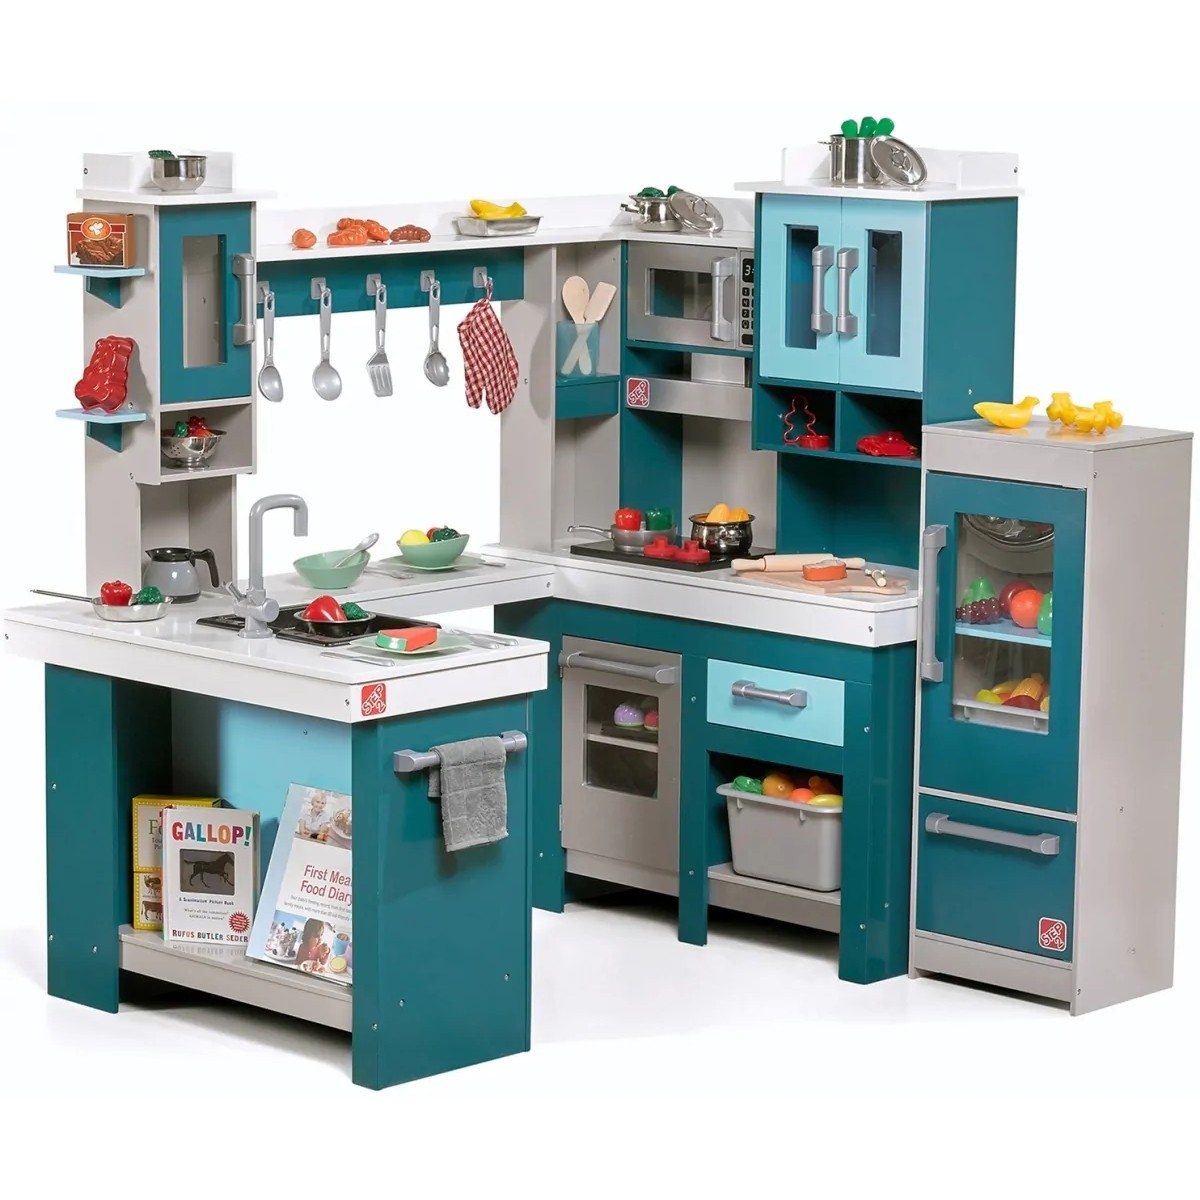 Фото детской кухни для игры